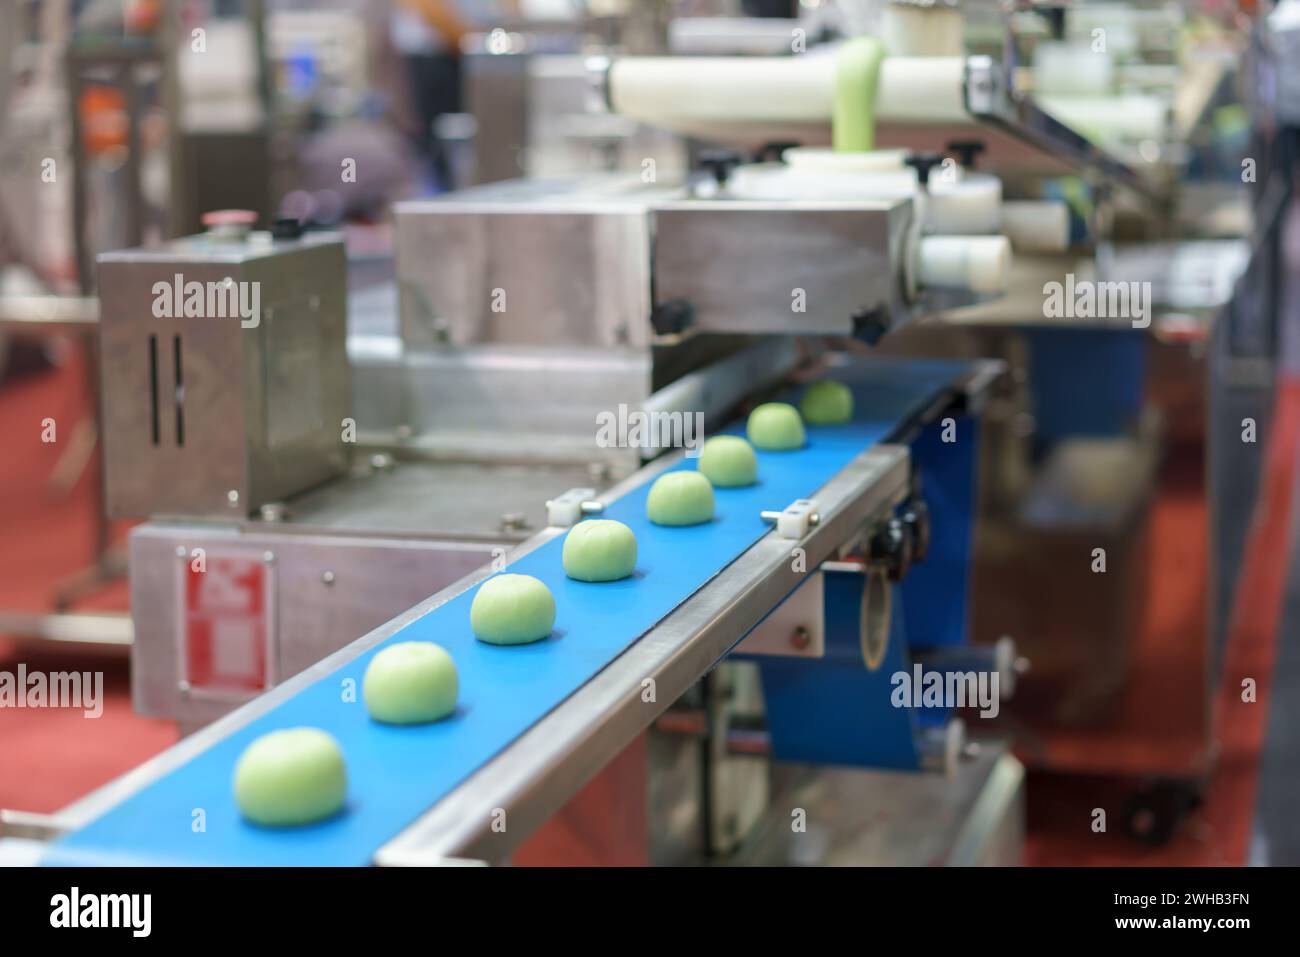 Immagine ravvicinata di un sistema automatizzato di trasformazione alimentare industriale che mostra porzioni di impasto su un nastro trasportatore blu, con elementi di macchinari sul retro Foto Stock